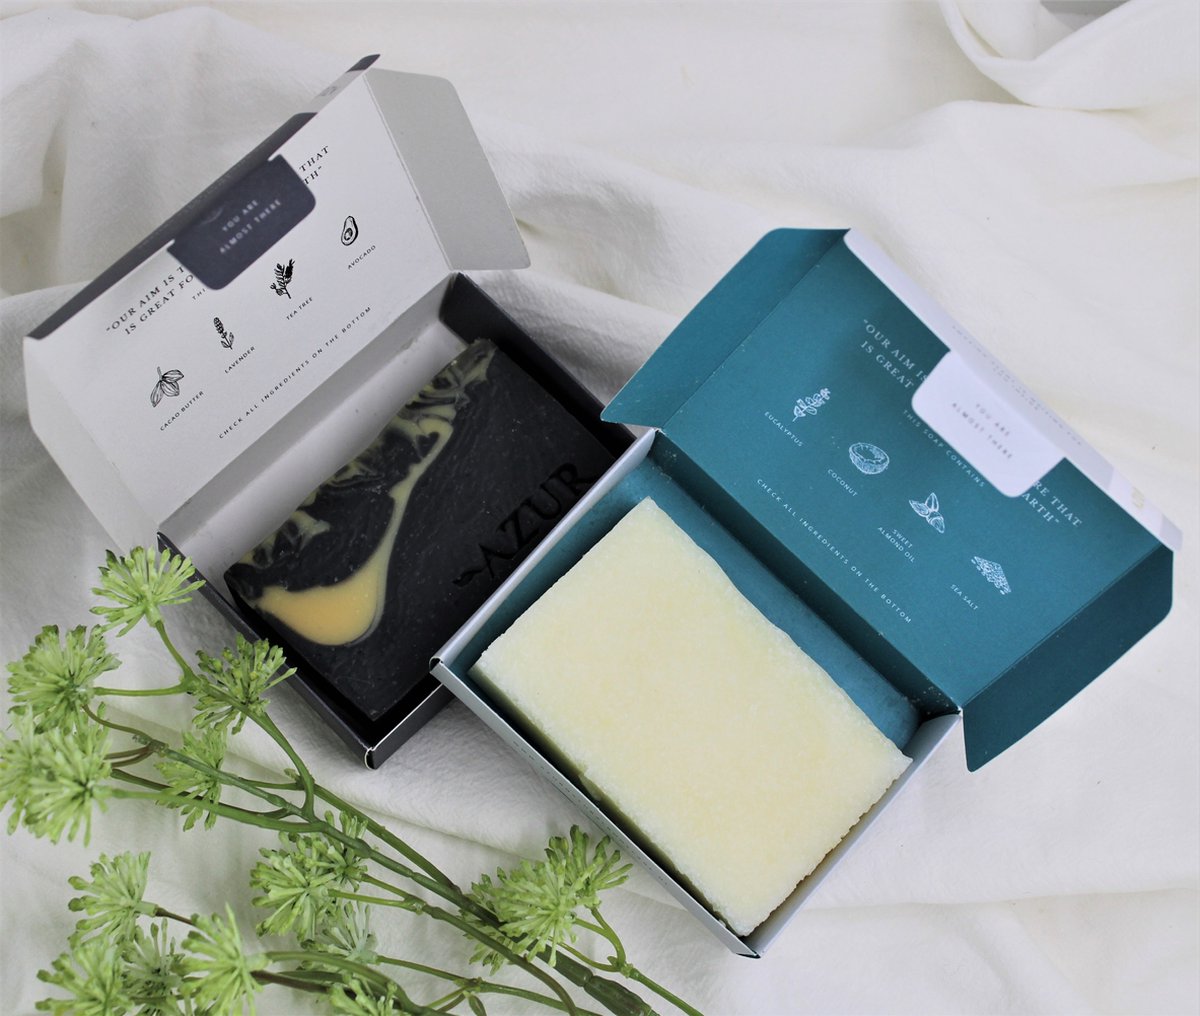 Geschenkset Skinecare - Cadeau voor vrouwen - Giftbox vrouwen - Duurzaam cadeau vrouw - Natuurlijke zeep - Handgemaakt - Plasticvrij - Dierproefvrij